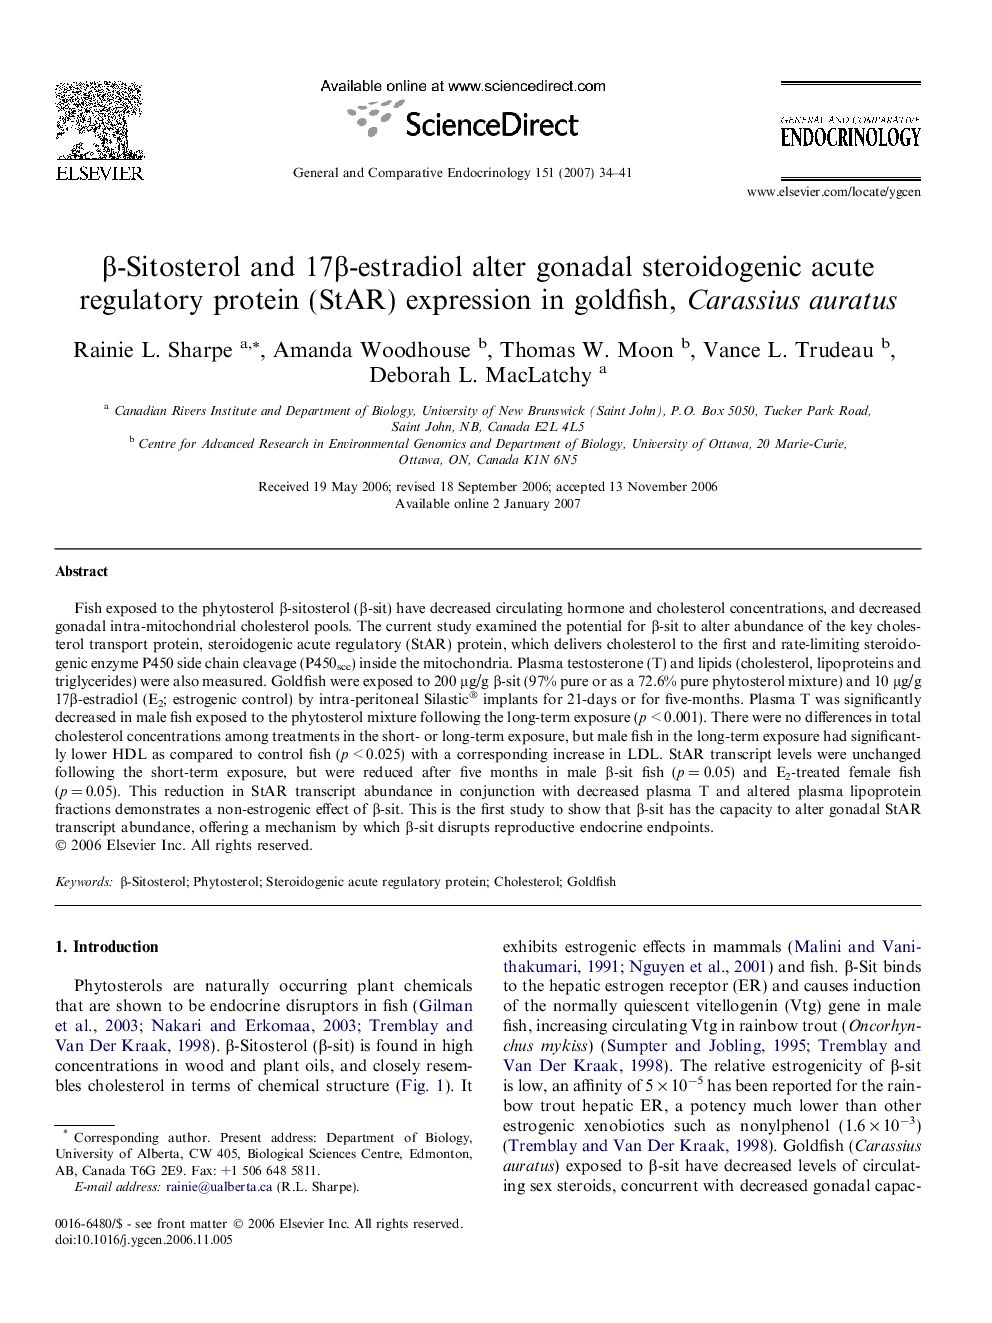 β-Sitosterol and 17β-estradiol alter gonadal steroidogenic acute regulatory protein (StAR) expression in goldfish, Carassius auratus